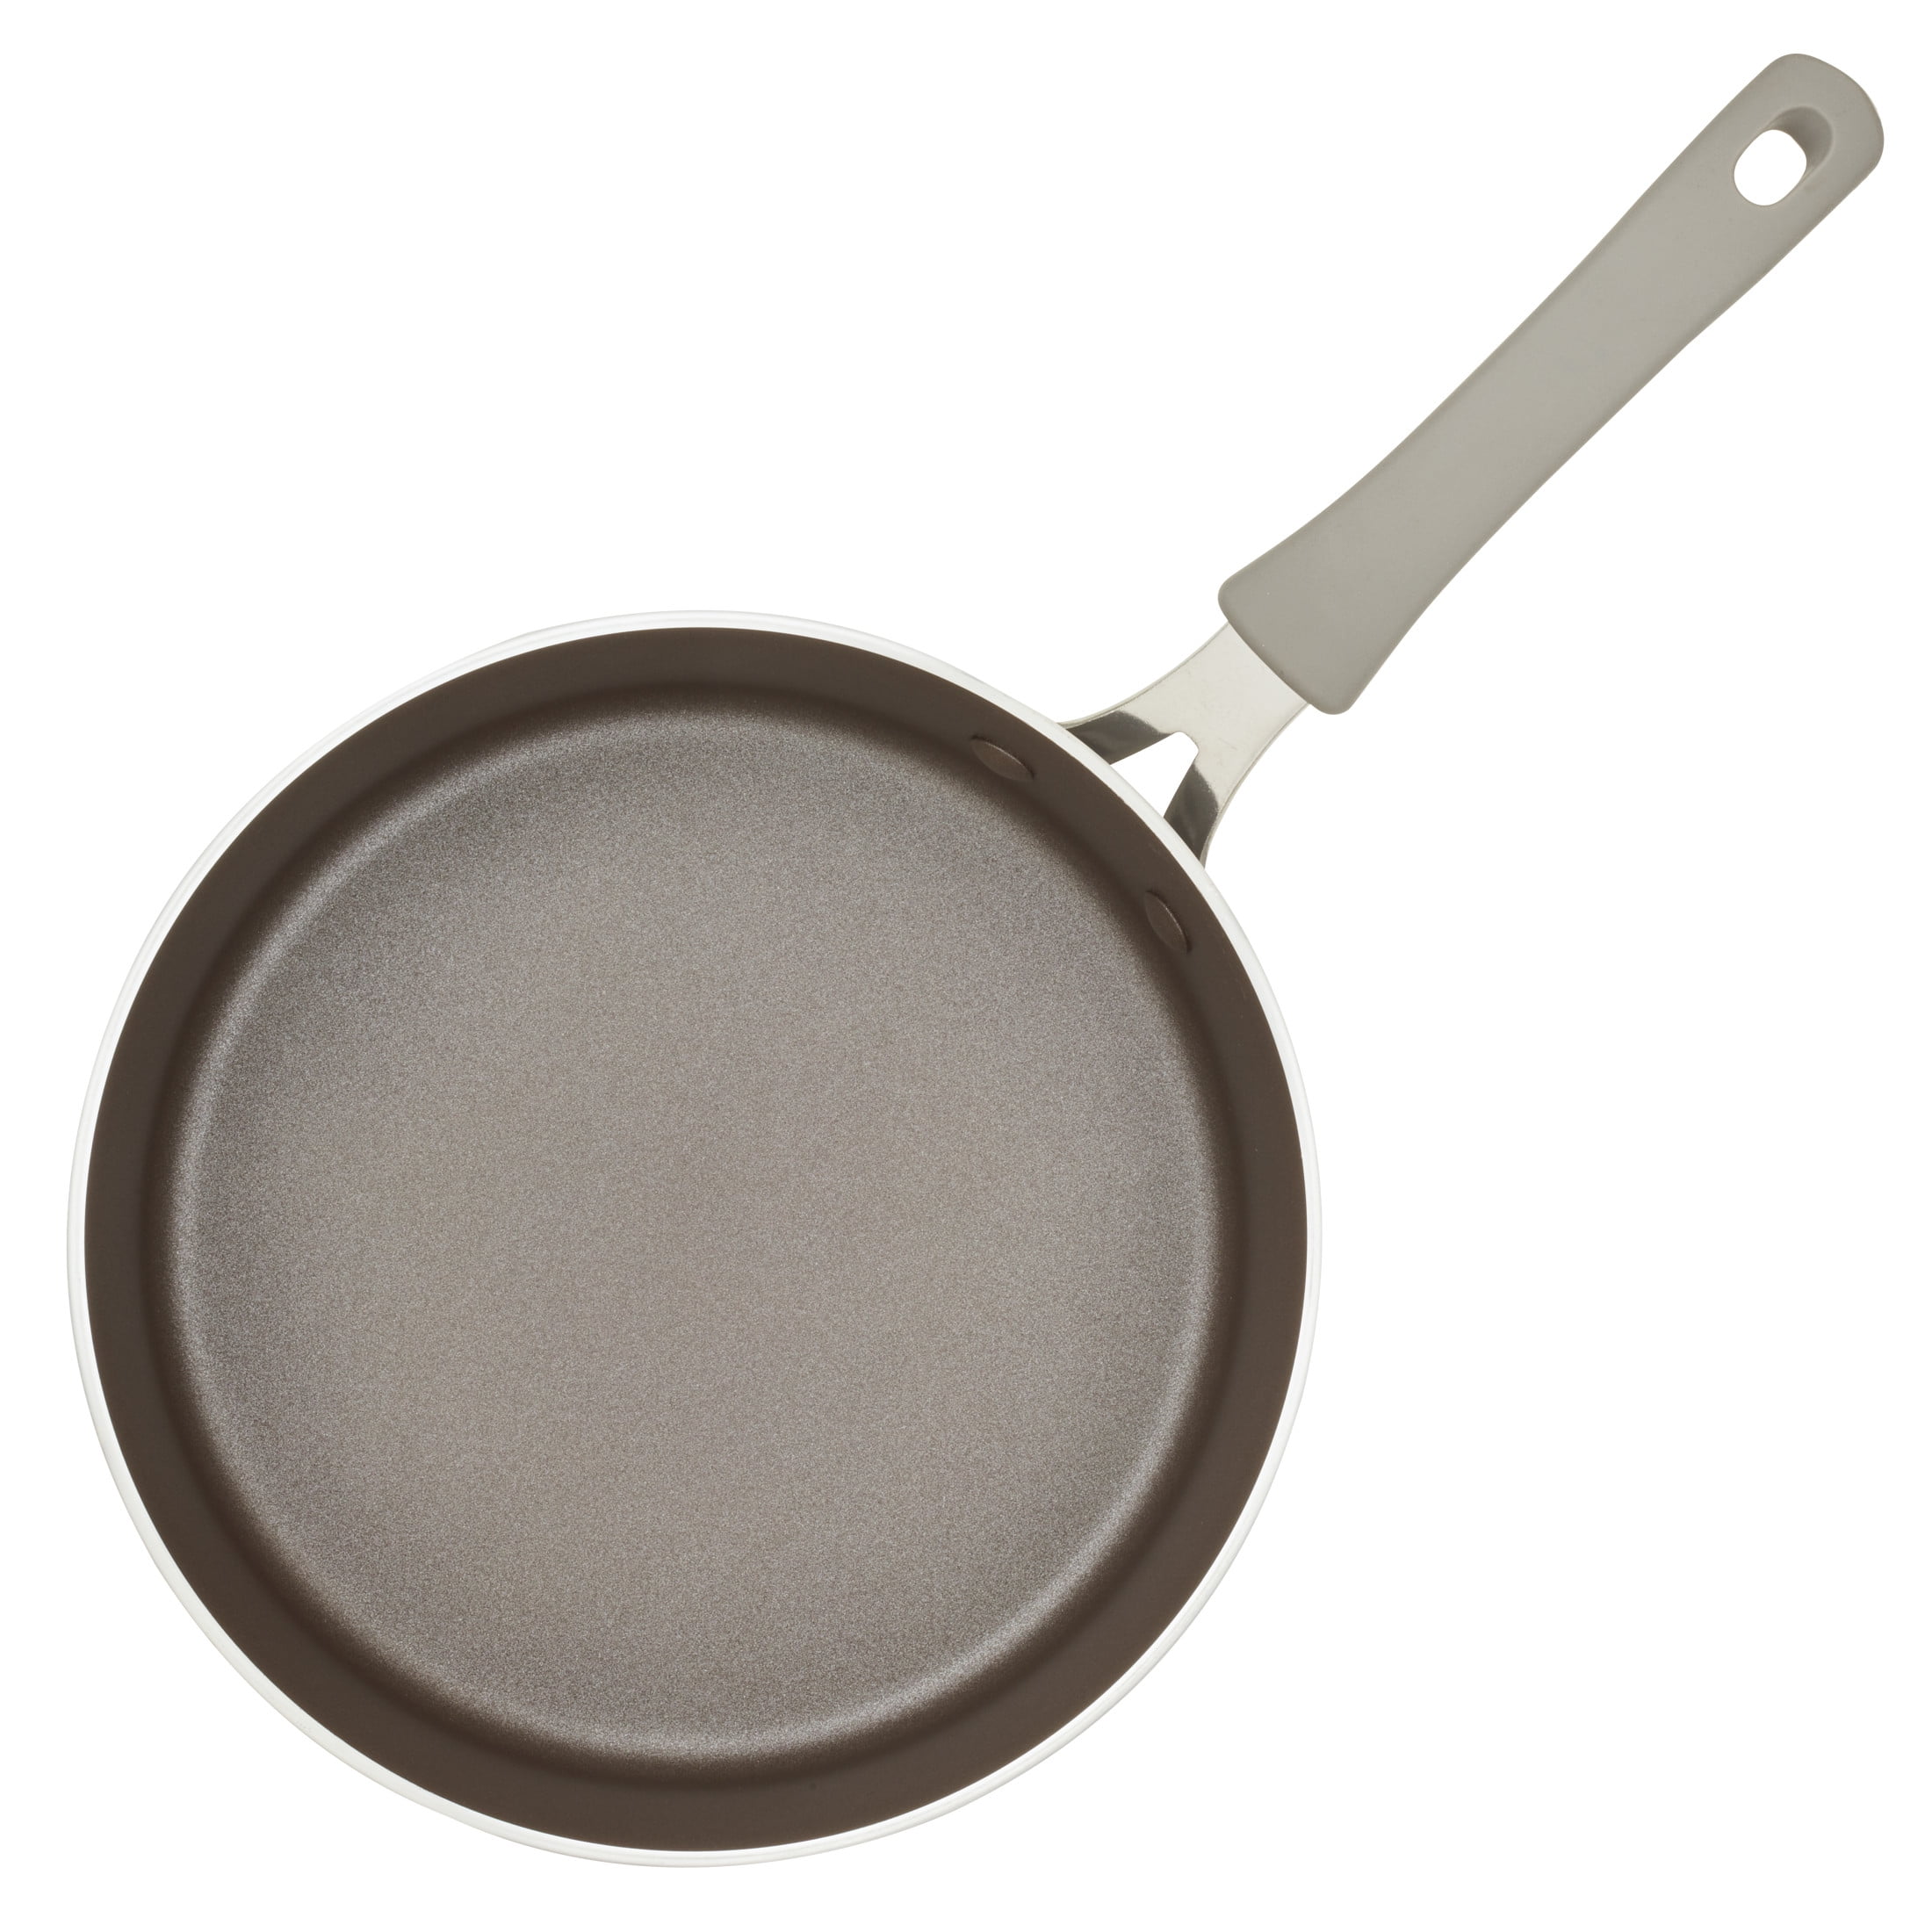 Buy a Commercial-Grade 3 Quart Sauté Pan, Shop the PROS+ 3 QT Nonstick  Deep Sauté Pan at SCANPAN